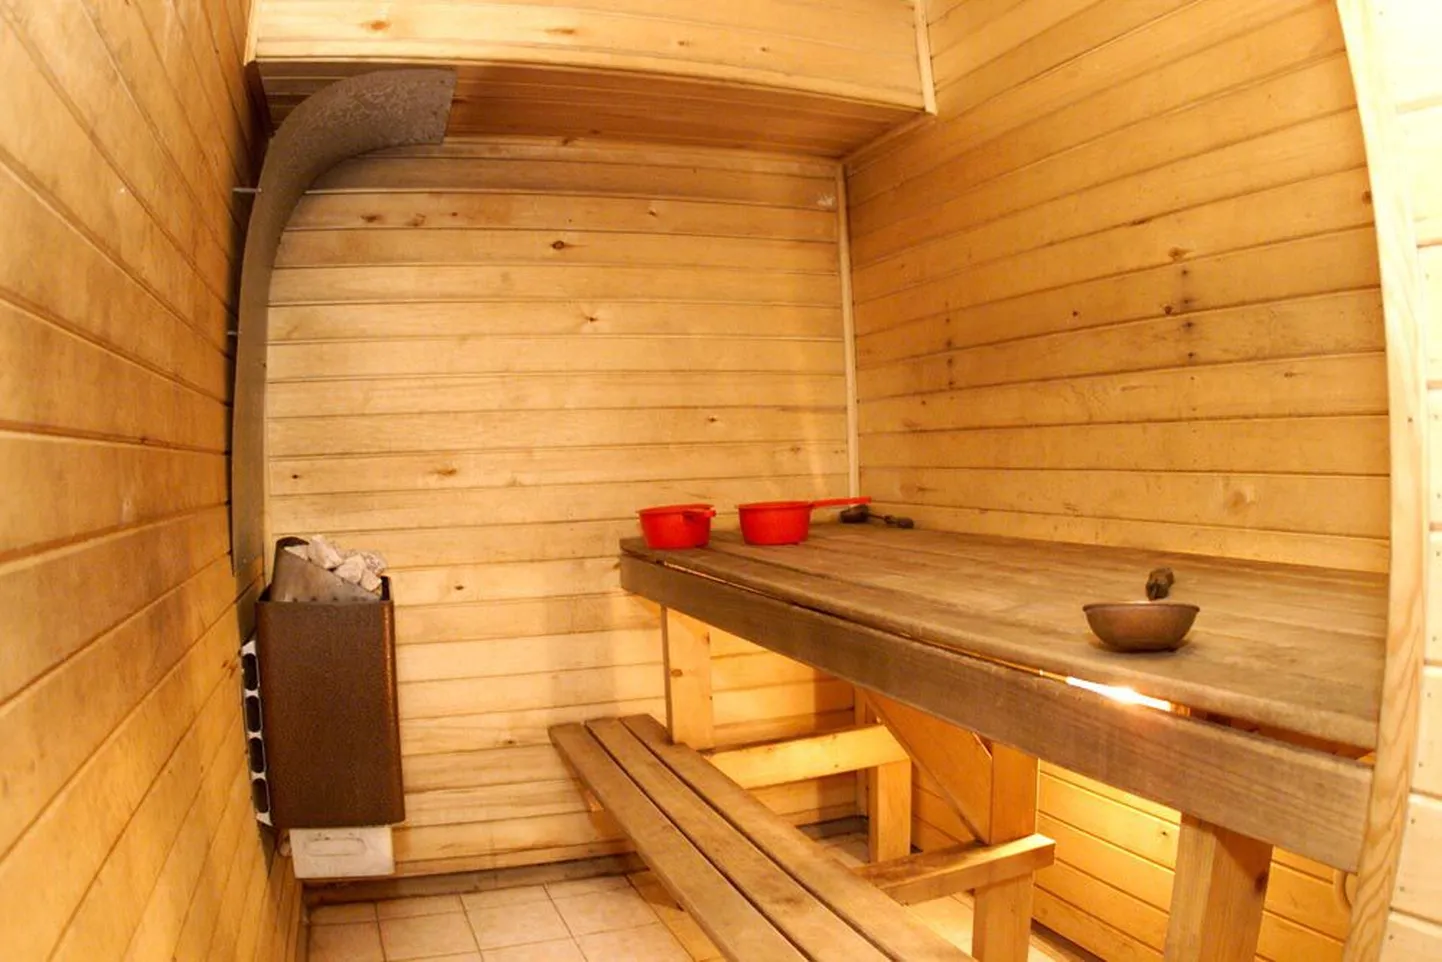 Väga kuuma sauna ja külmaveeprotseduuridesse peab südamehaige suhtuma suure ettevaatlikkusega.